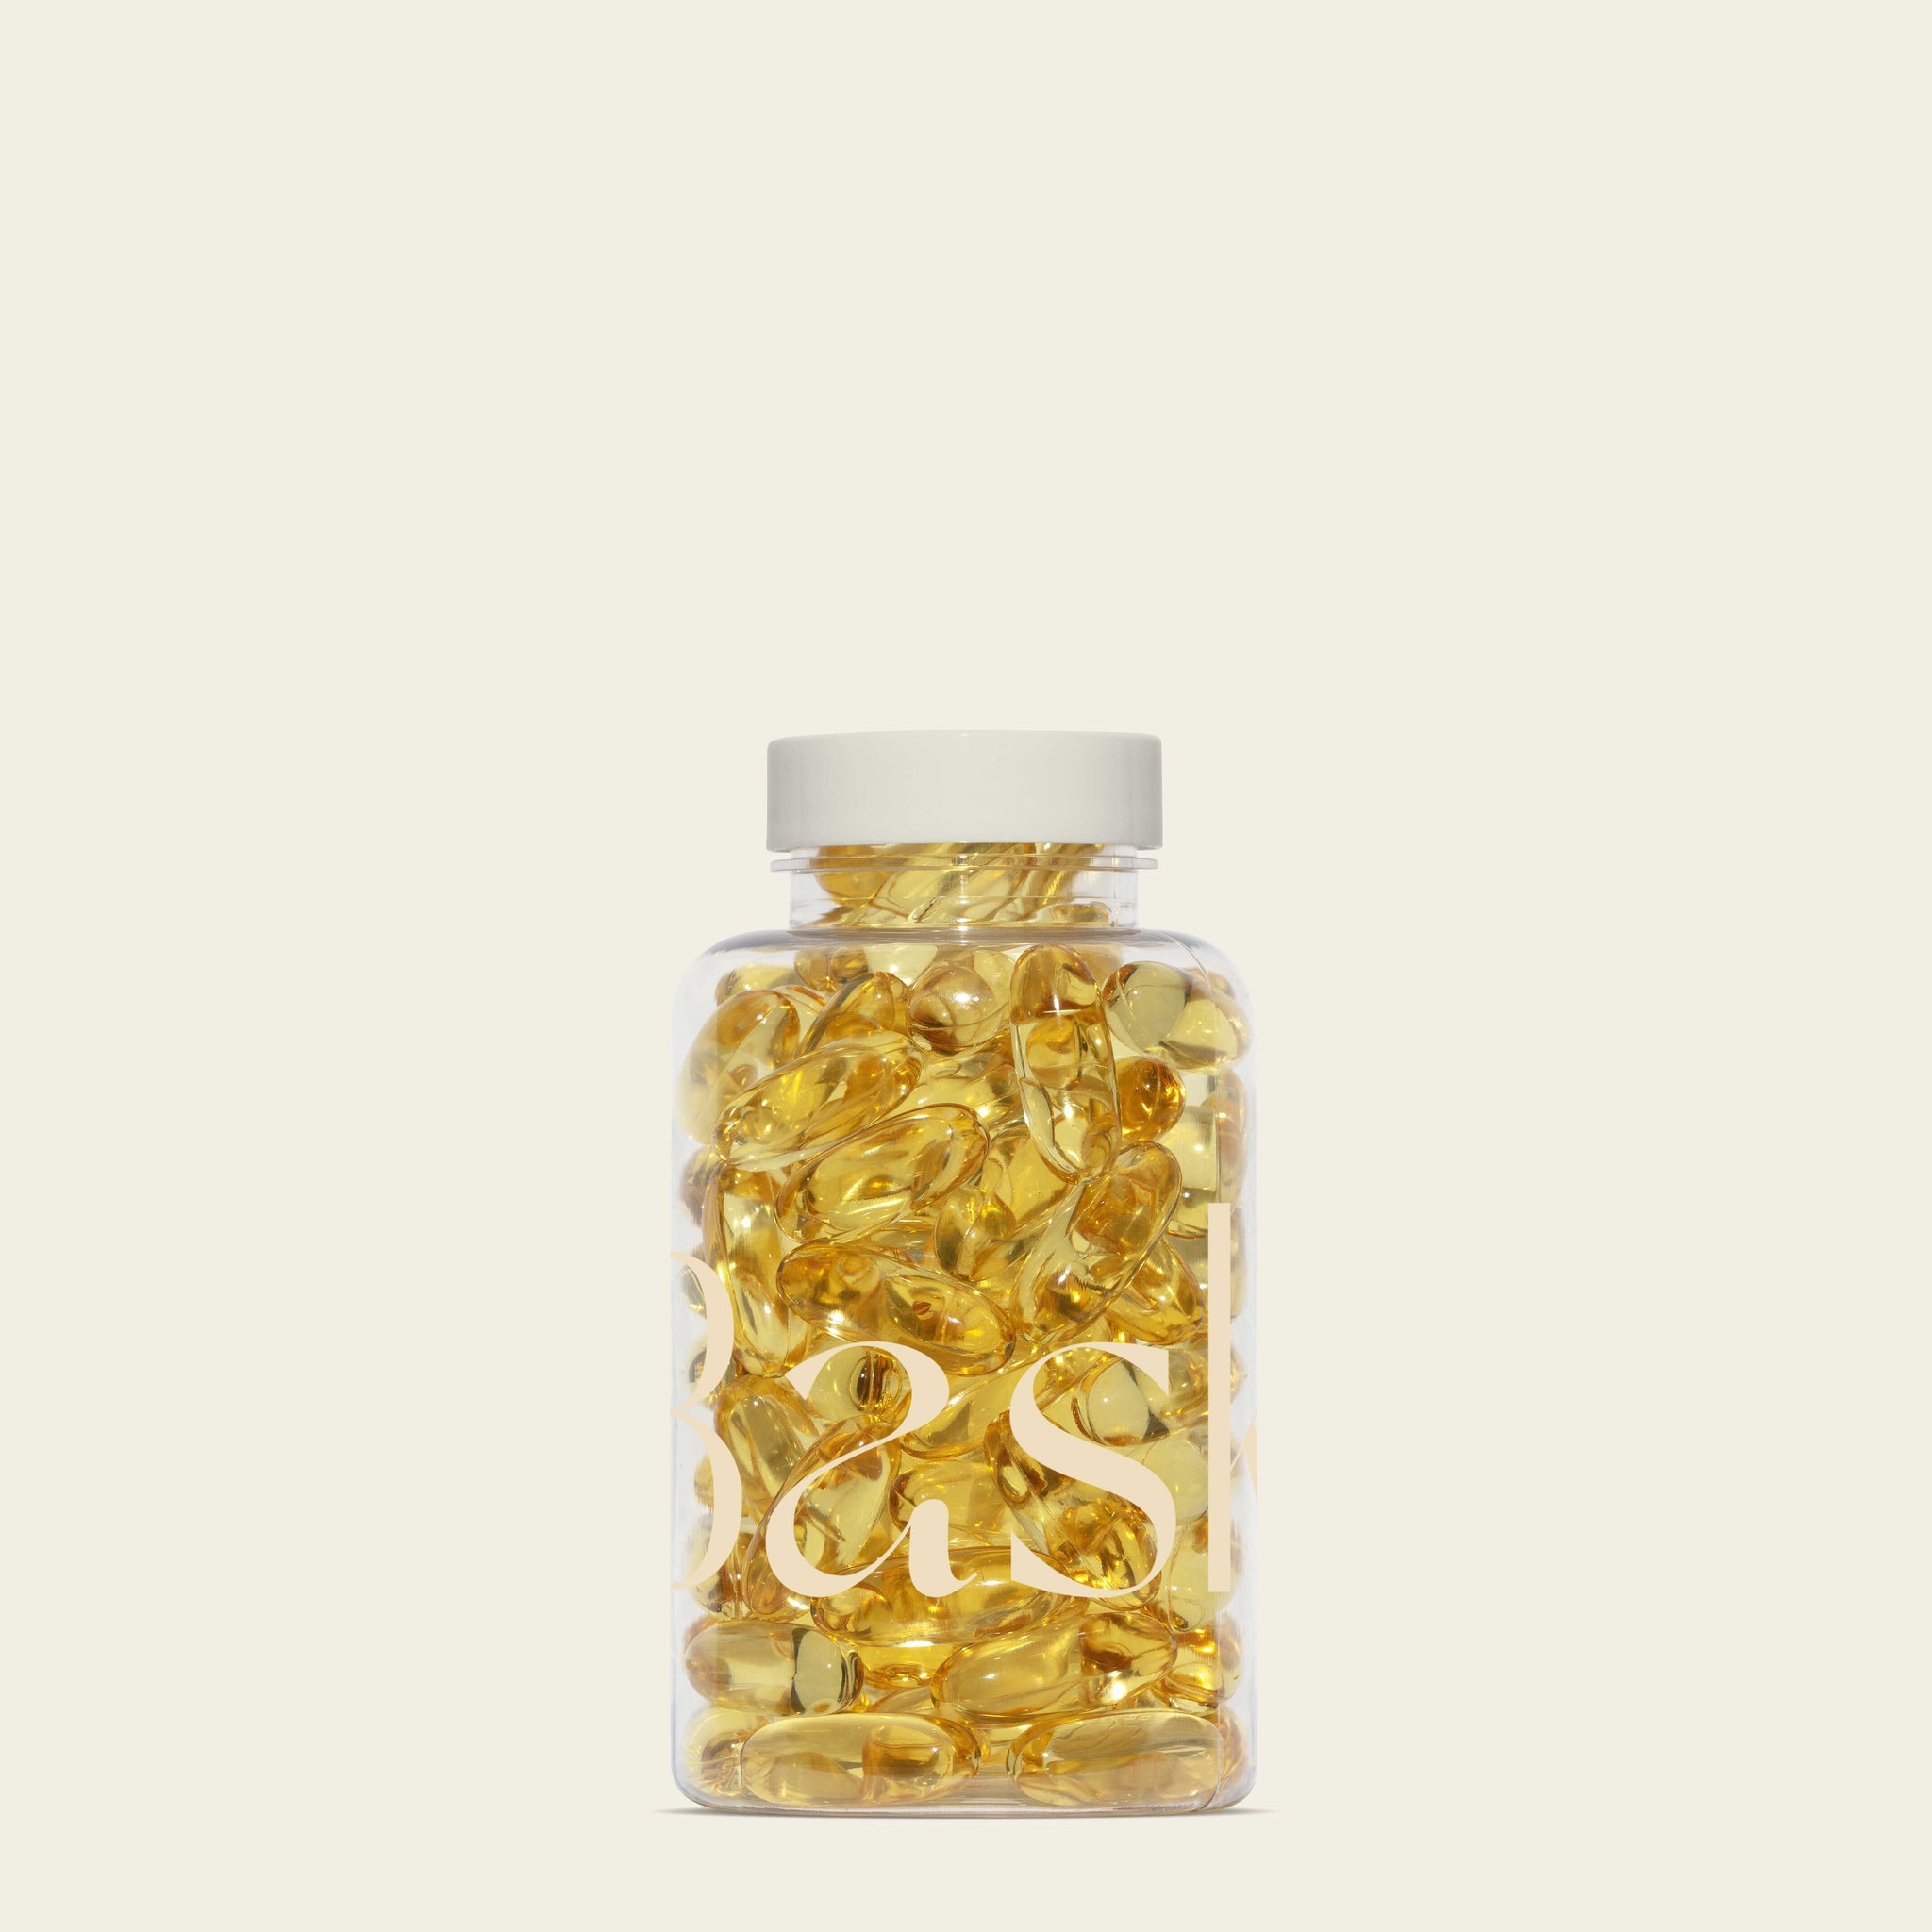 Vitamin Bottle Mockup No. 12 - Copal Studio Packaging Mockups For Designers